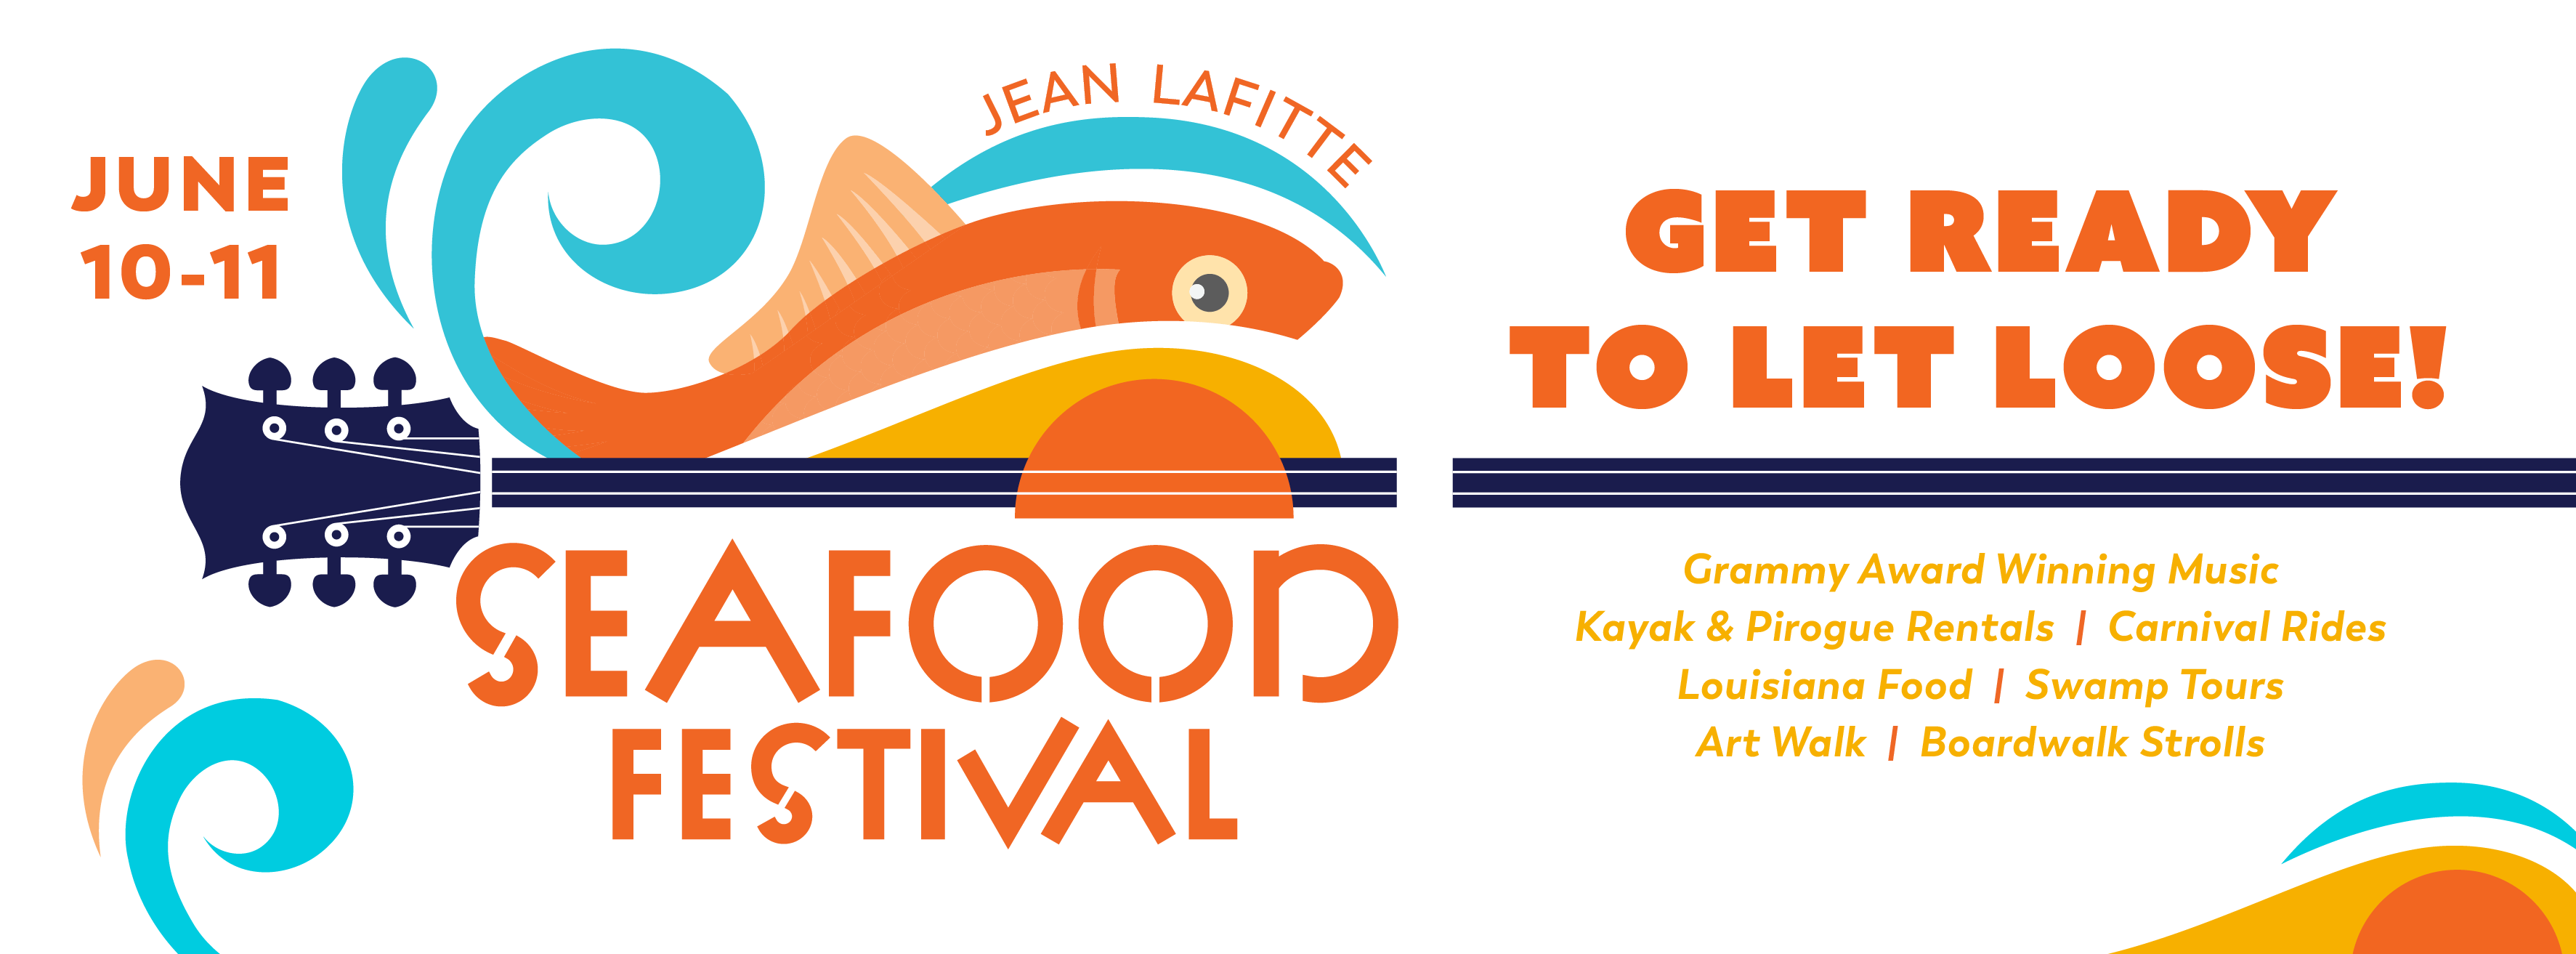 Jean Lafitte Seafood Festival | June 25–27